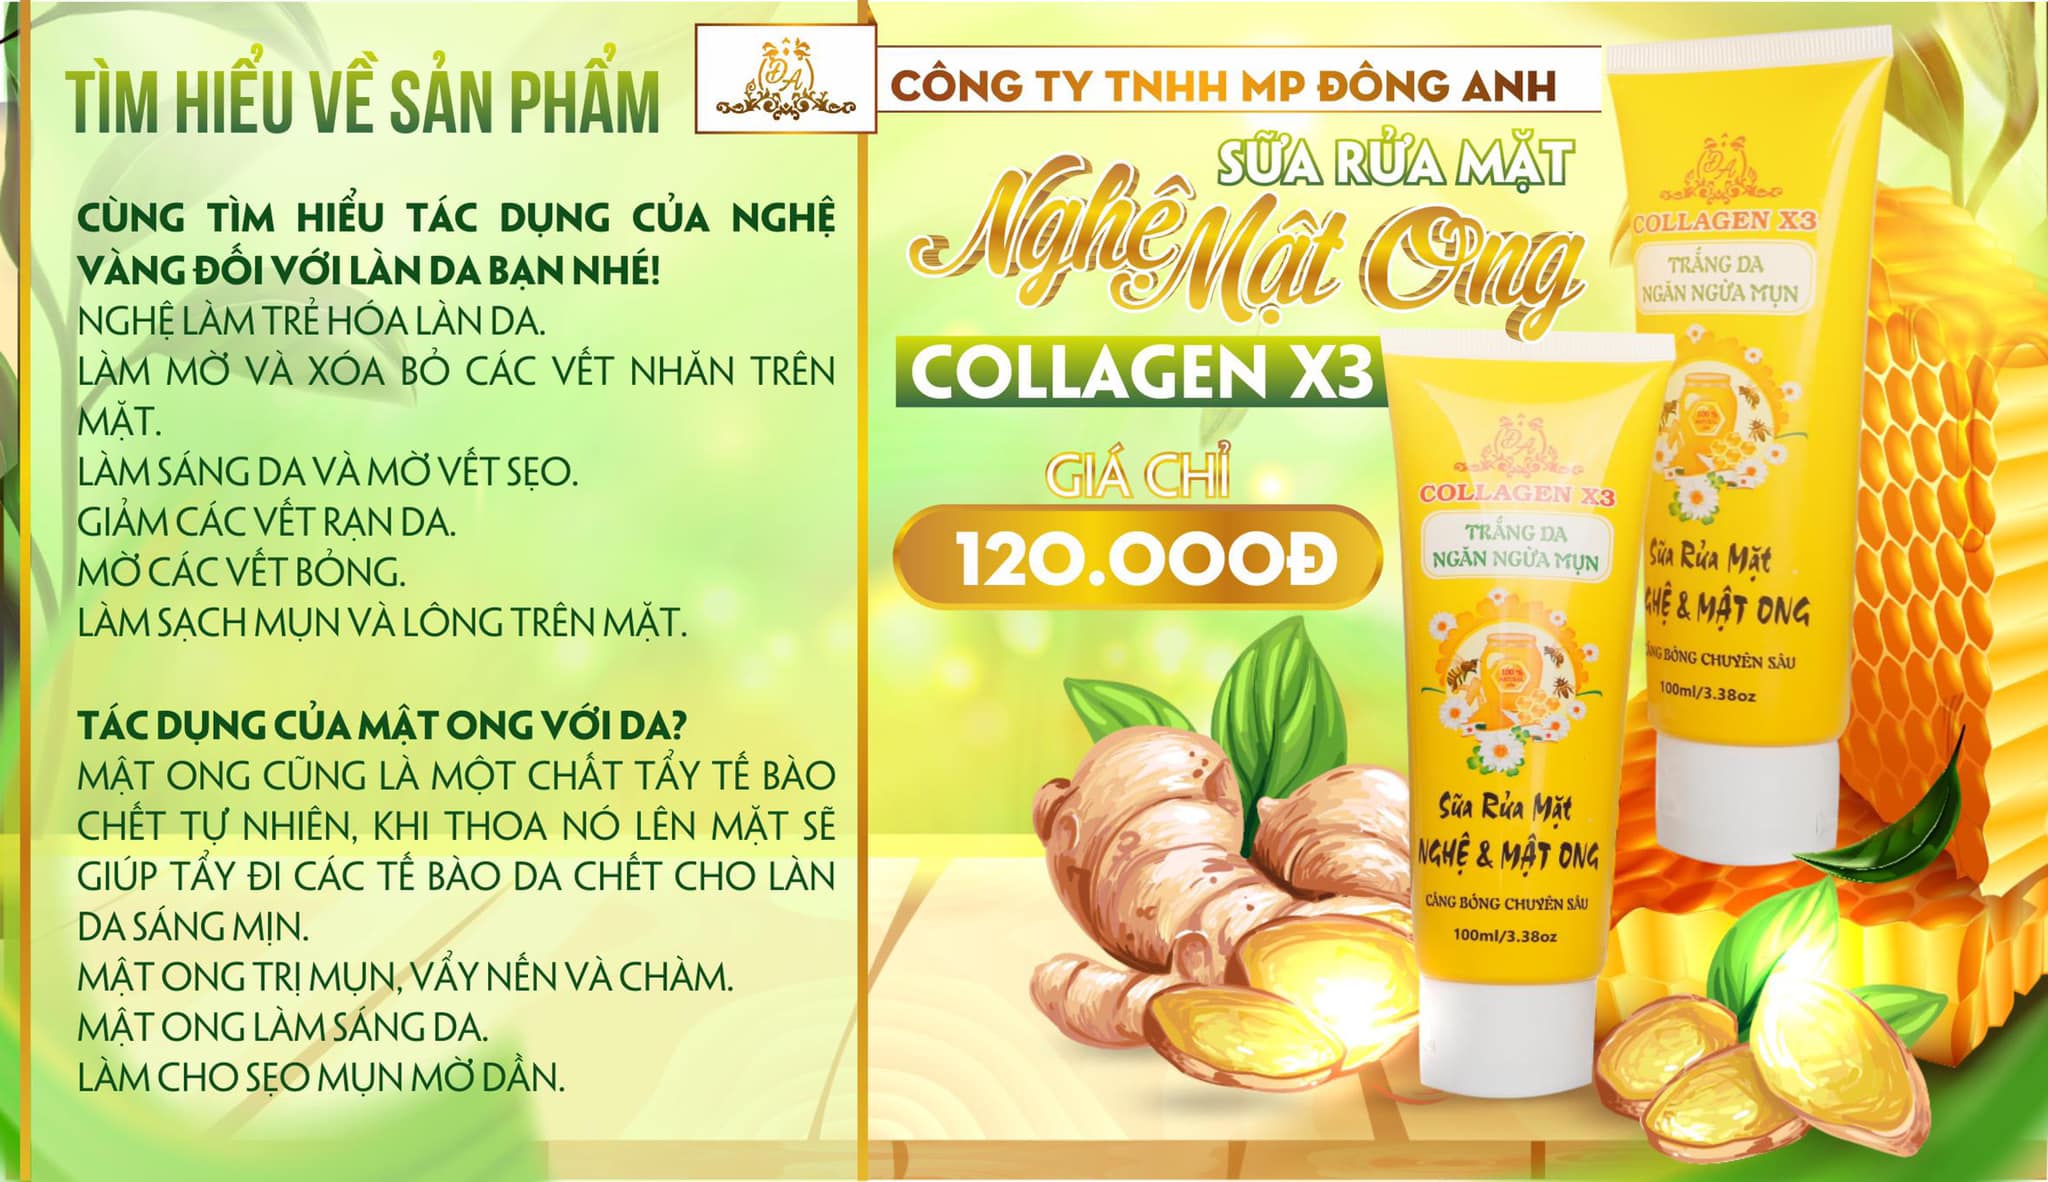 Sữa rửa mặt Collagen X3 tinh chất nghệ mật ong